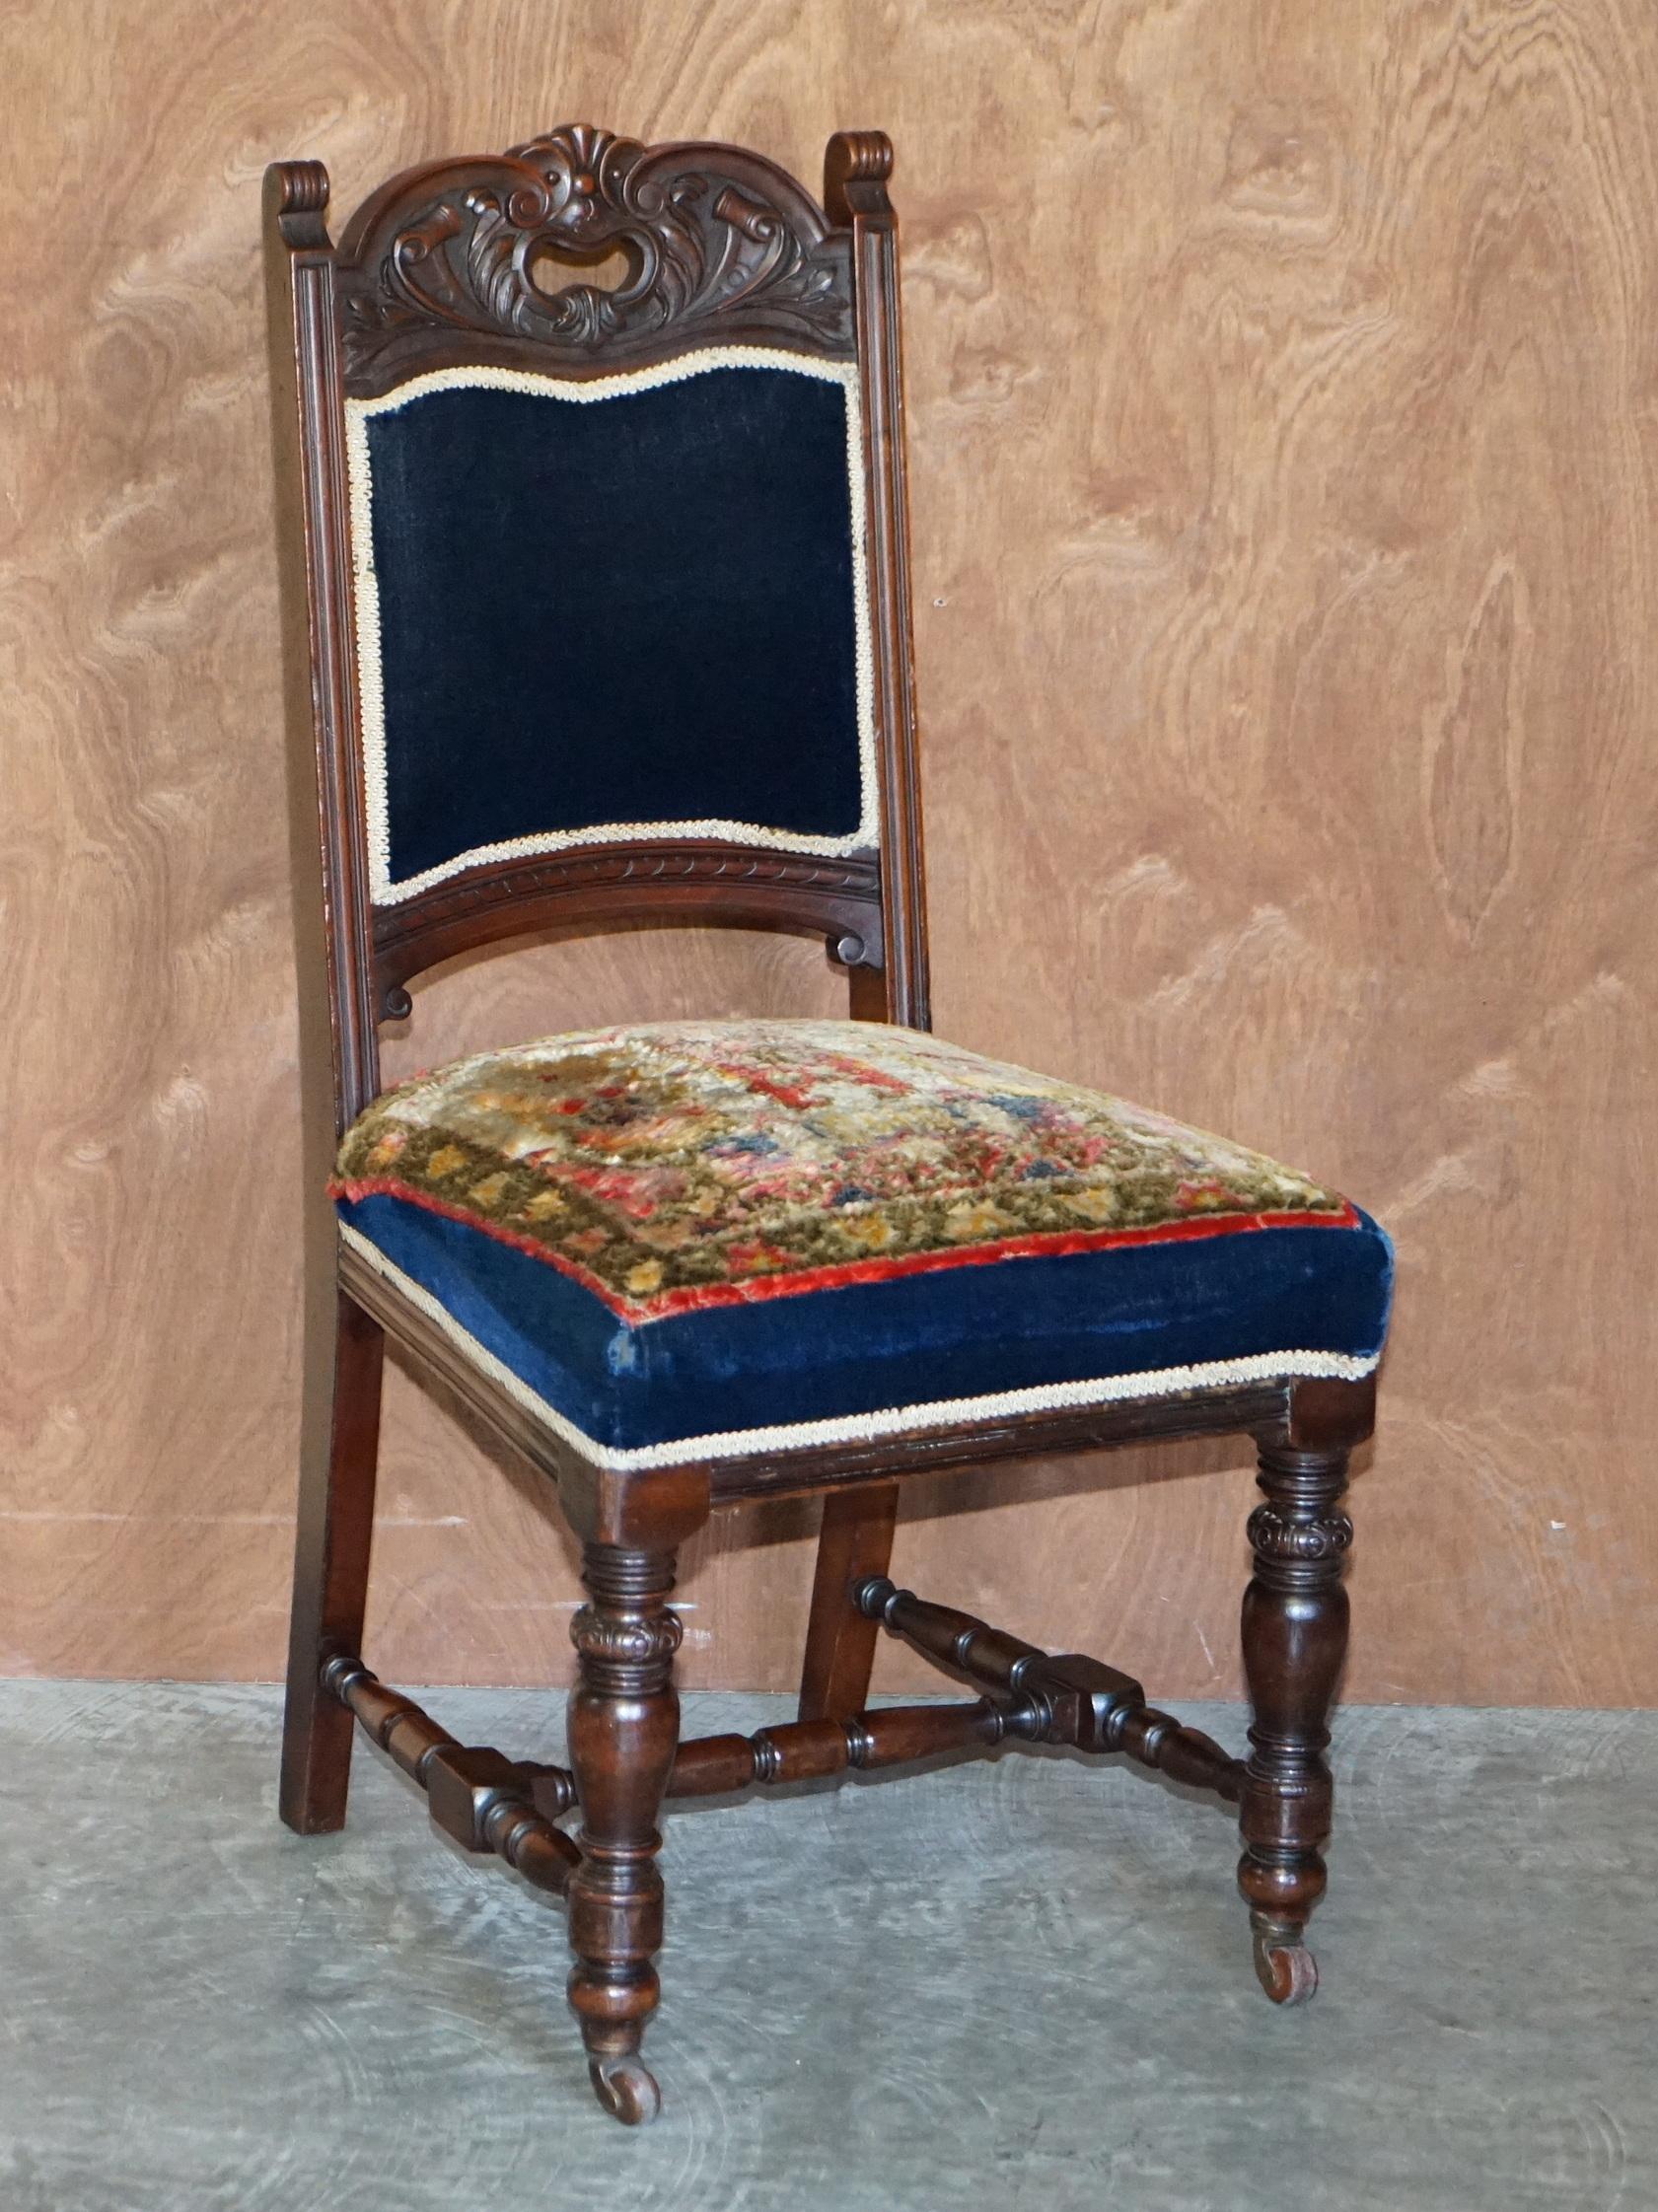 Nous avons le plaisir d'offrir à la vente cet ensemble très rare et de grande collection de six chaises de salle à manger d'origine victorienne en acajou avec une tapisserie en tapis Kilim turc bordé de bleu napoléonien qui font partie d'une